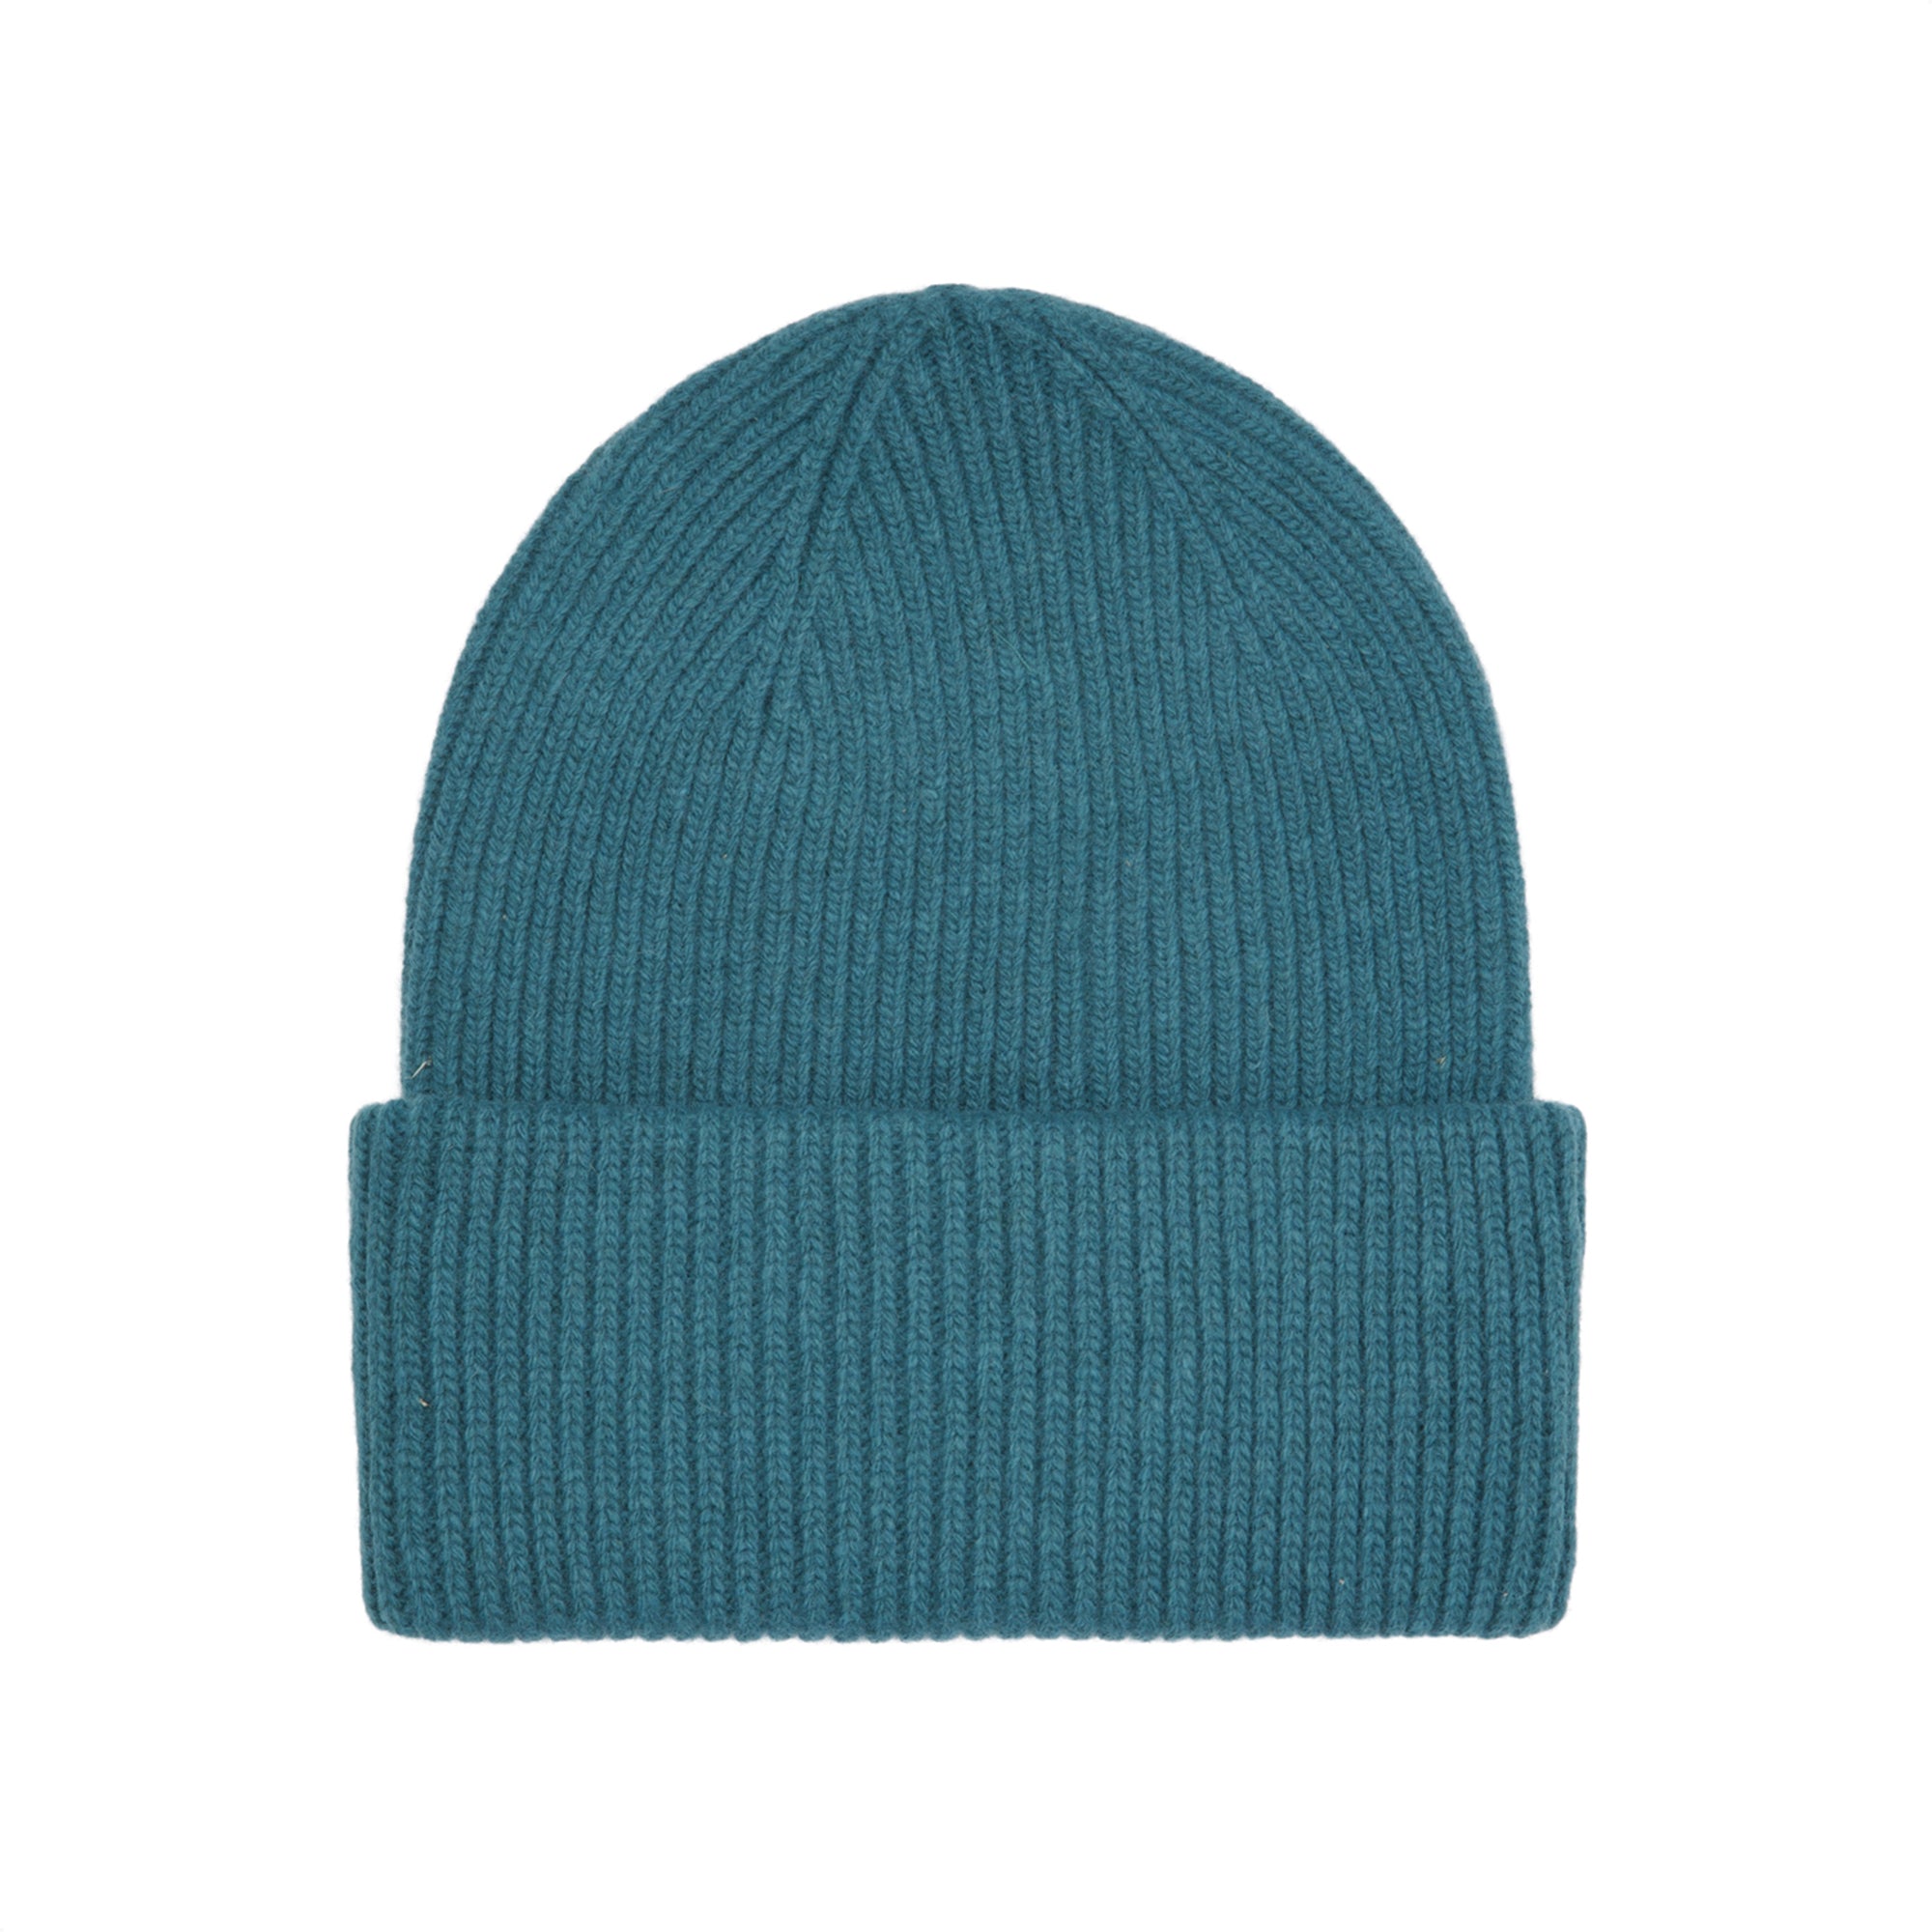 Colorful Standard Merino Wool Hat - Ocean Green